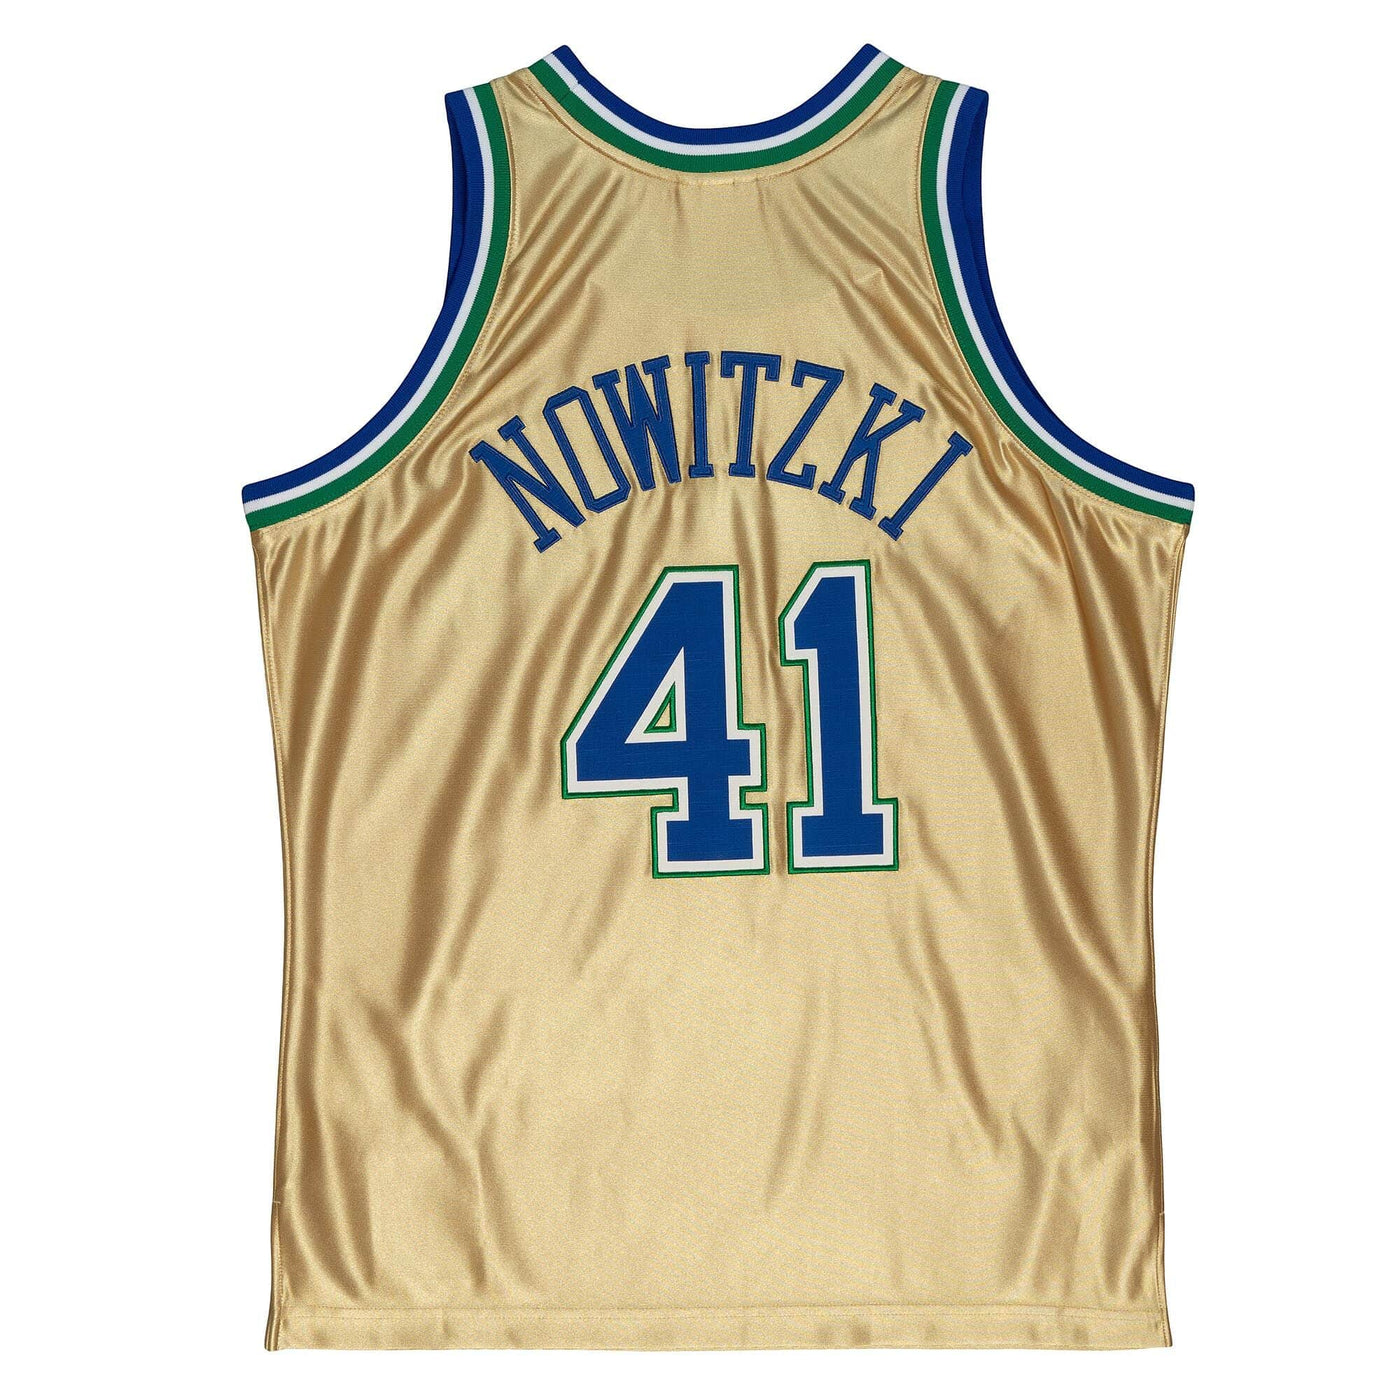 Mens Dallas Mavericks Dirk Nowitzki 75Th Anni 1998 Replica Jersey